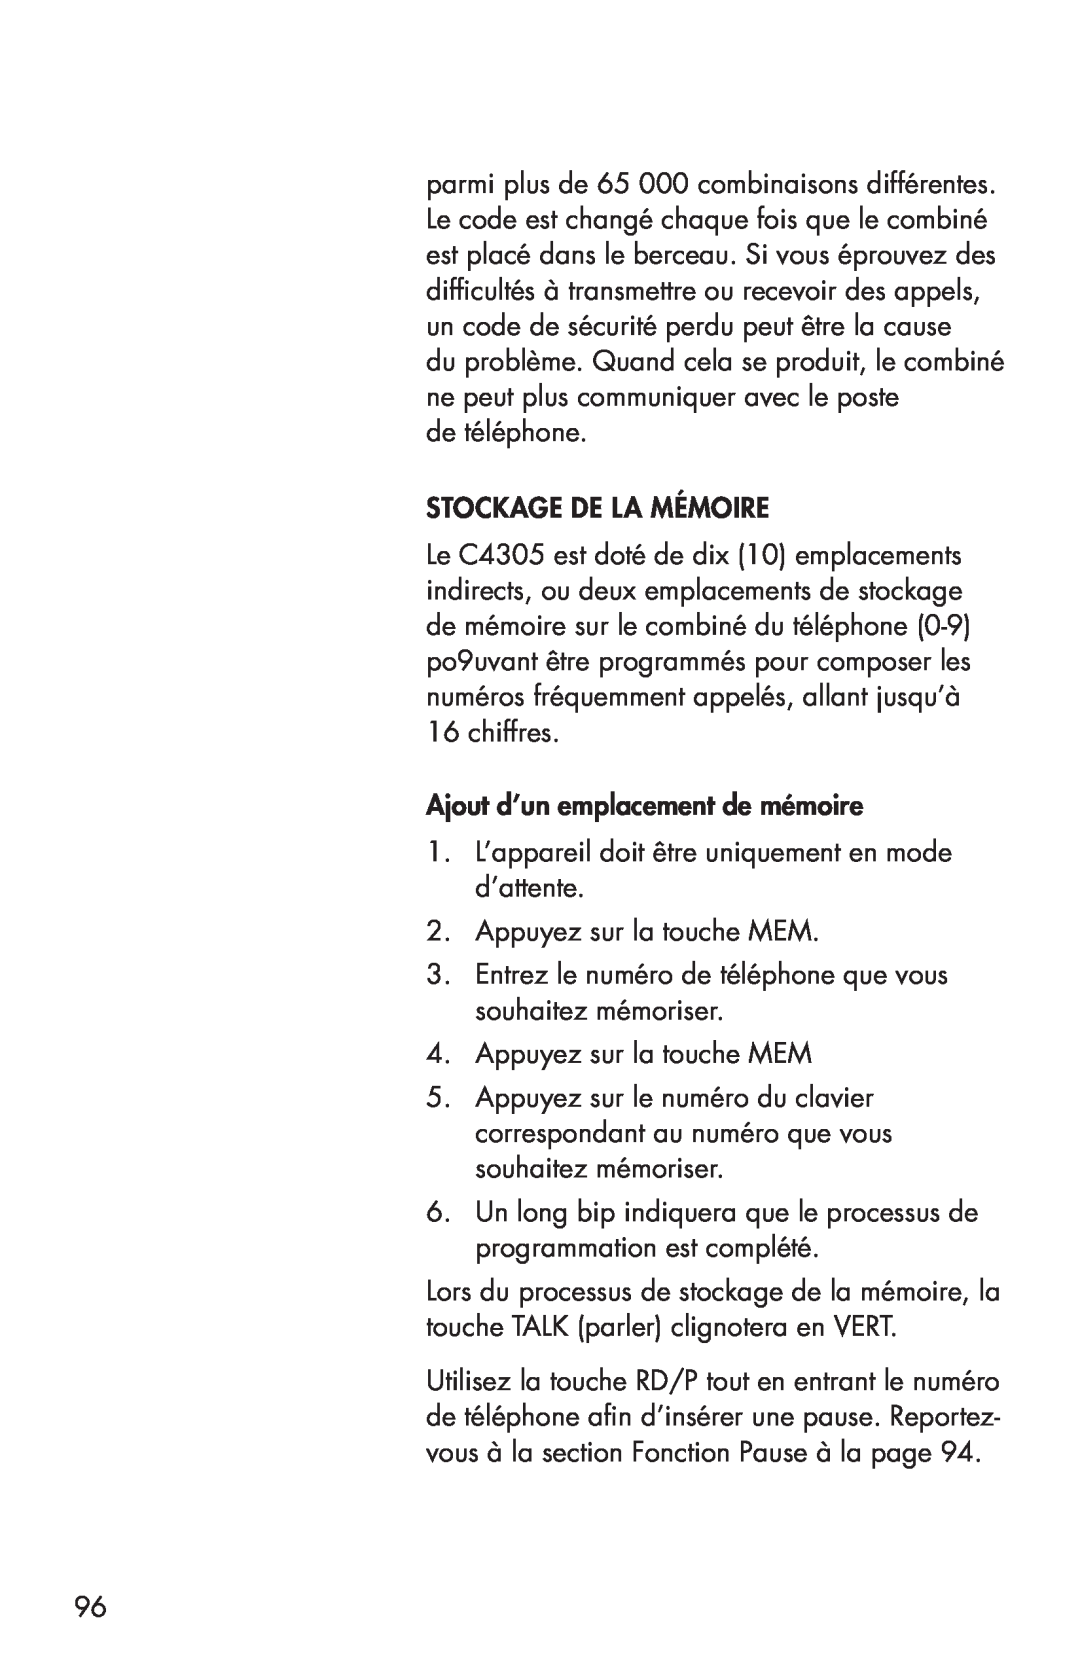 Clarity C4205 manual de téléphone STOCKAGE DE LA MÉMOIRE, Ajout d’un emplacement de mémoire, Appuyez sur la touche MEM 